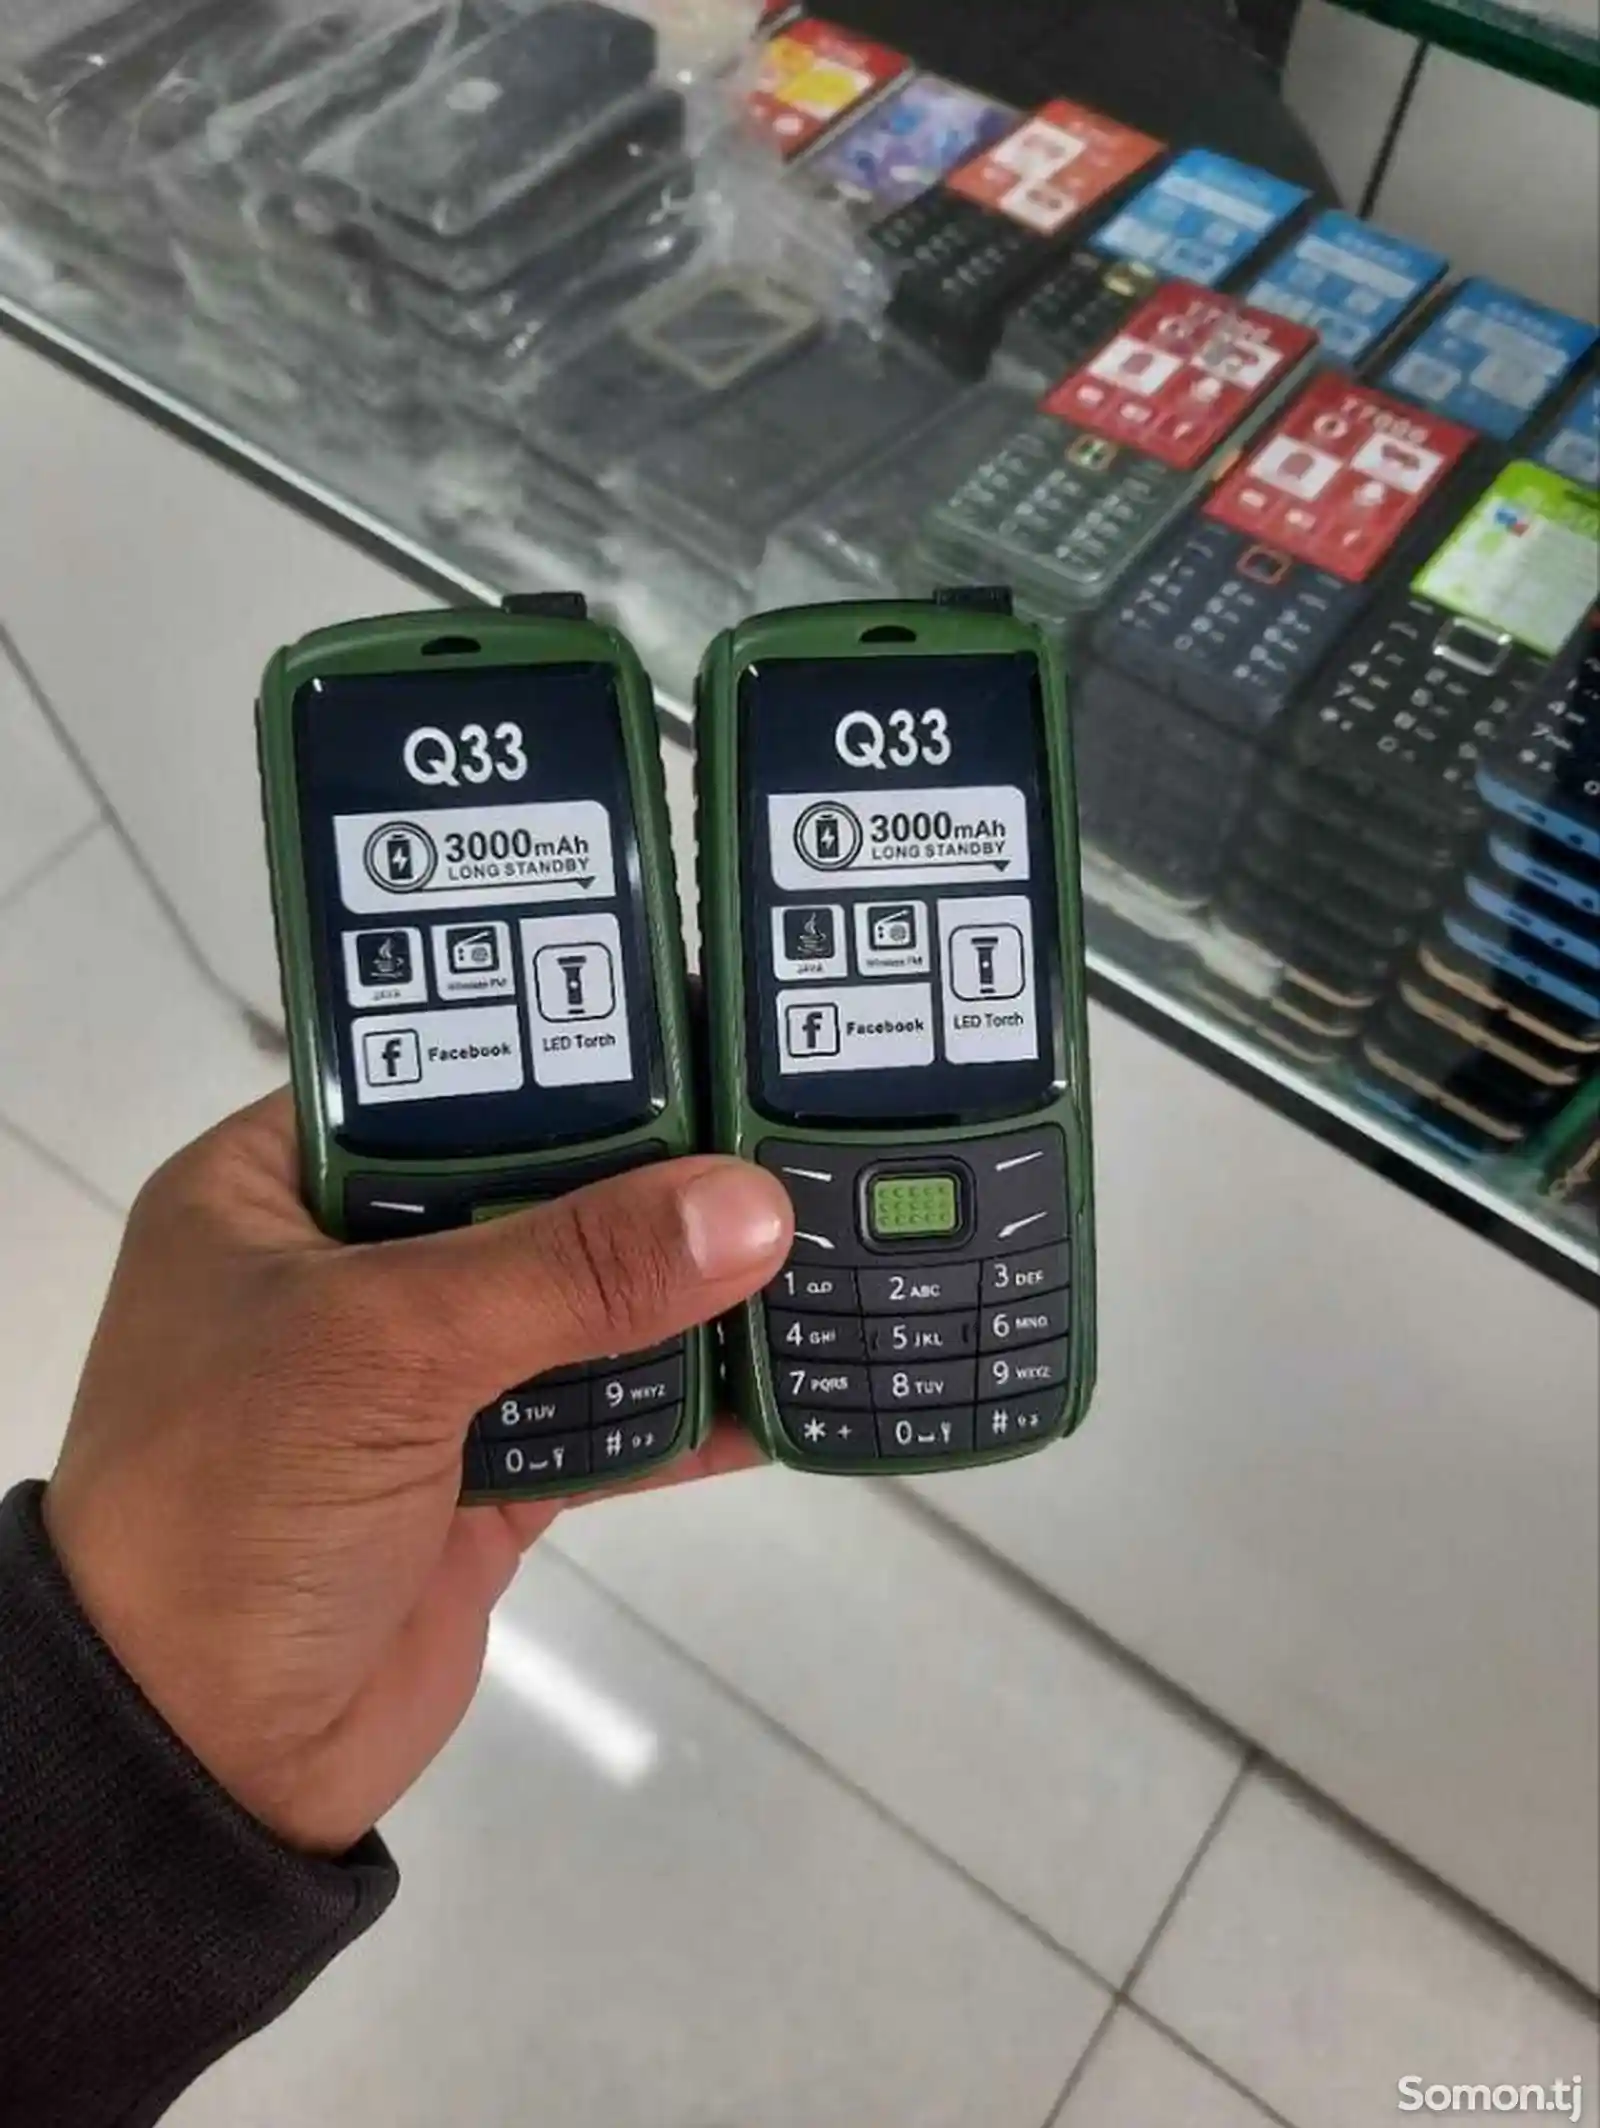 Nokia Q33/Q36 duos-5